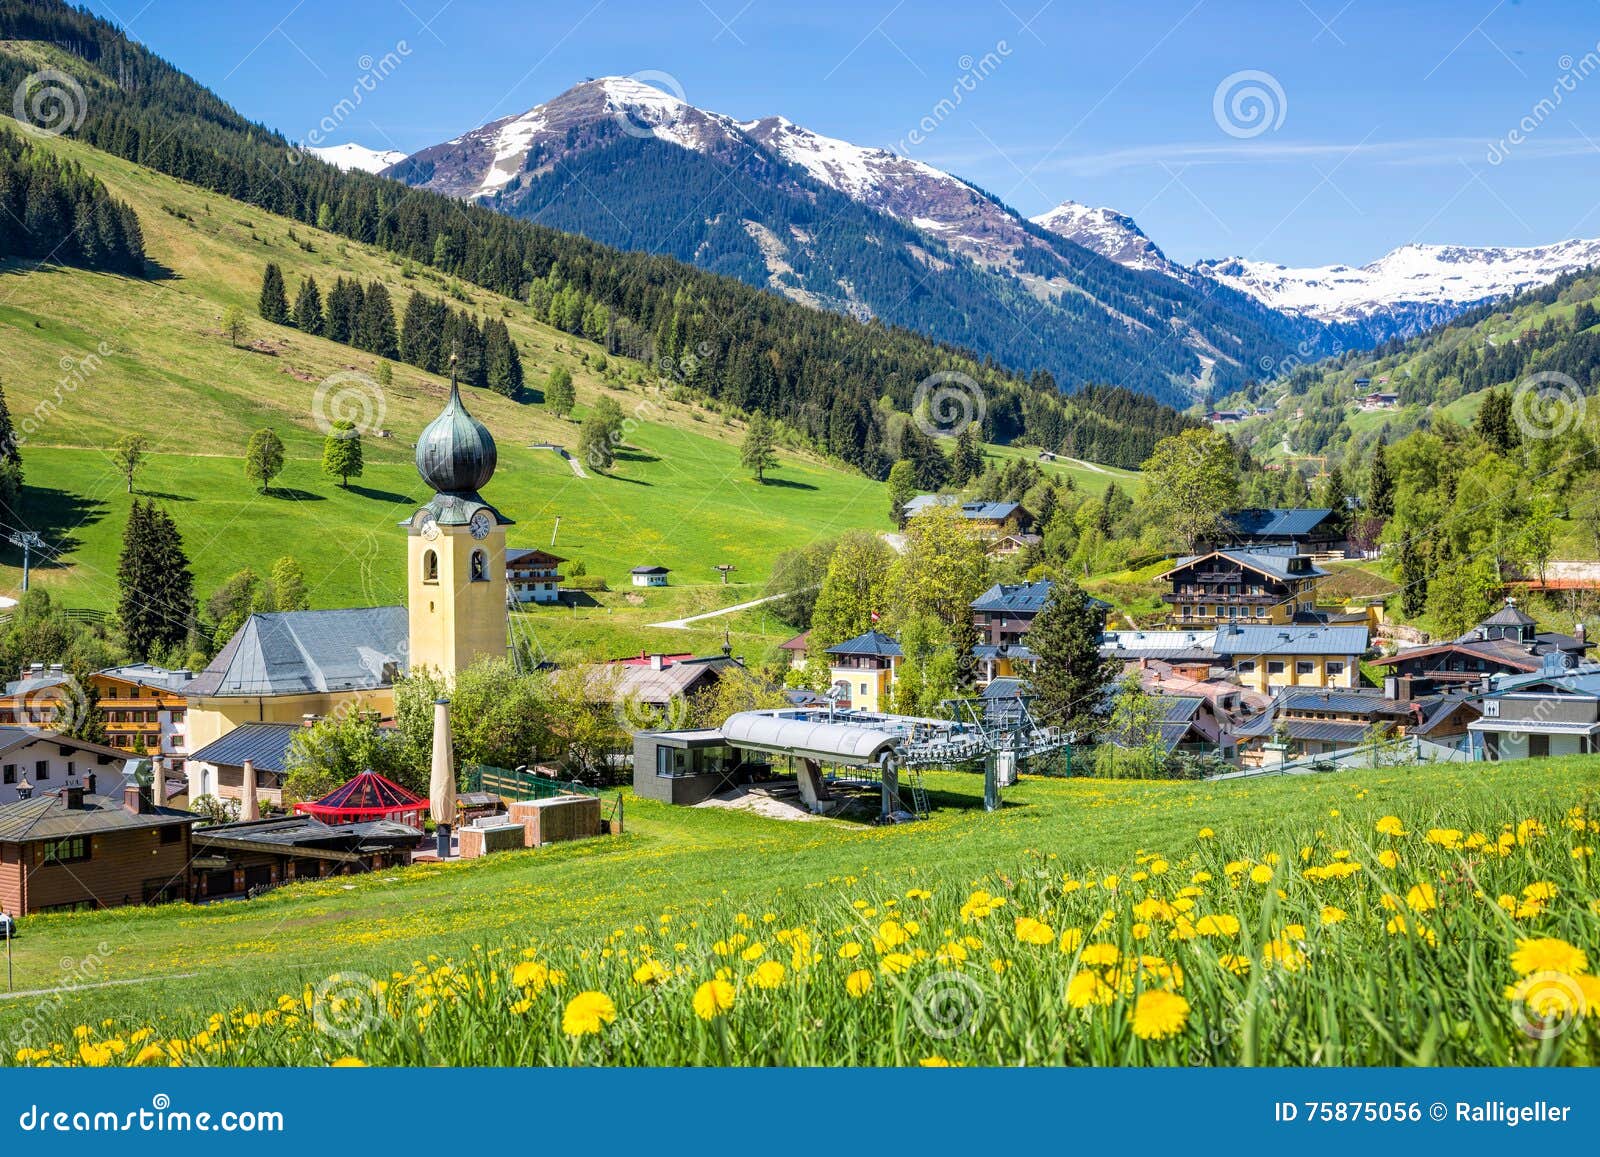 view over saalbach village in summer, austria